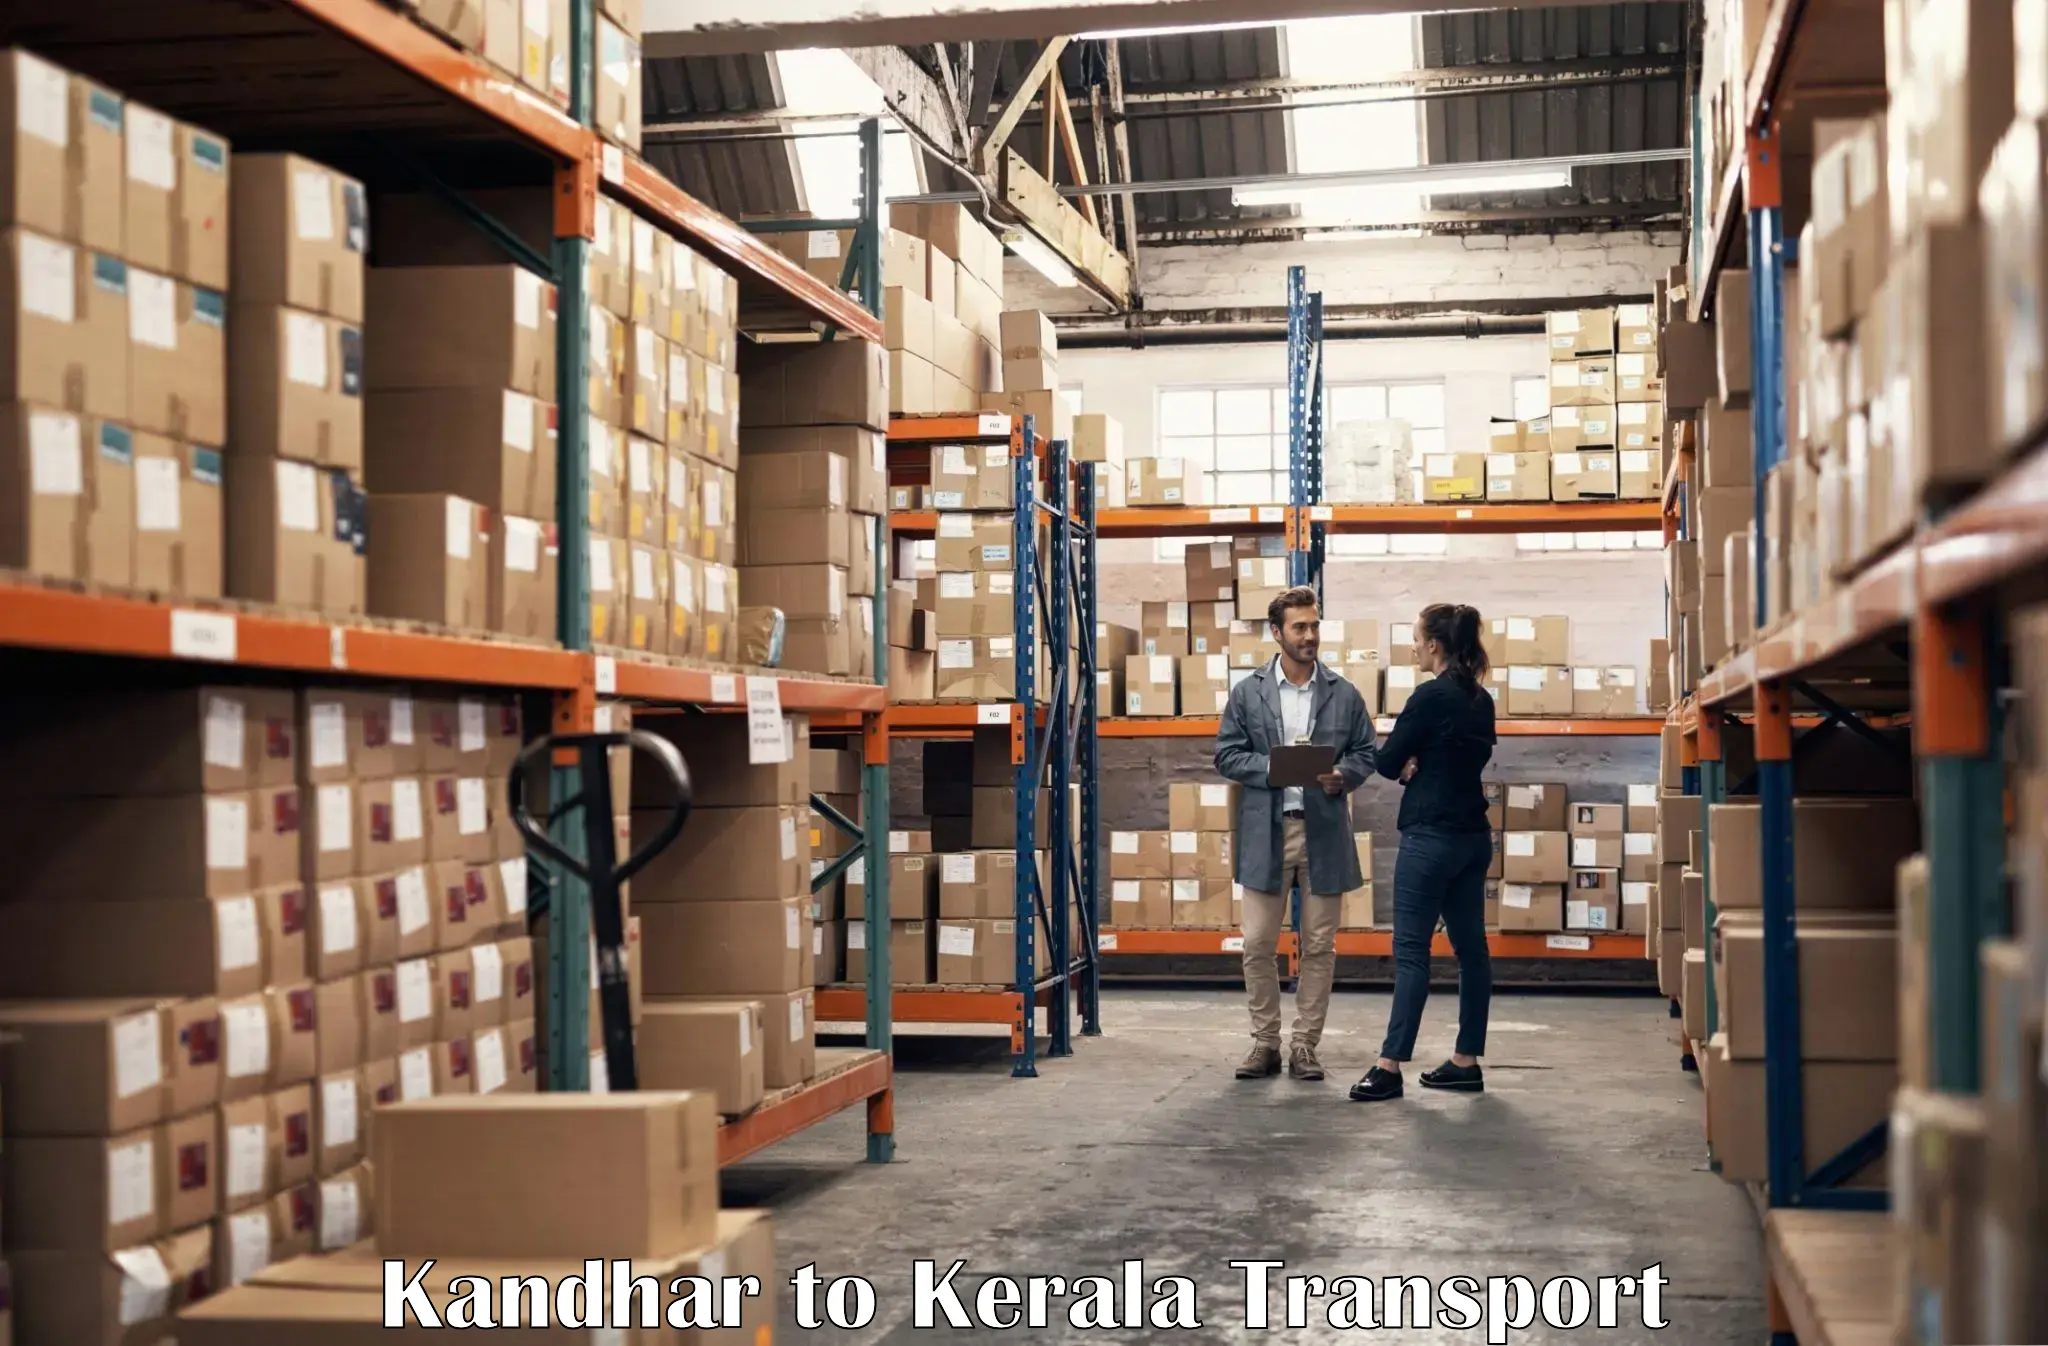 Vehicle transport services Kandhar to Karimba